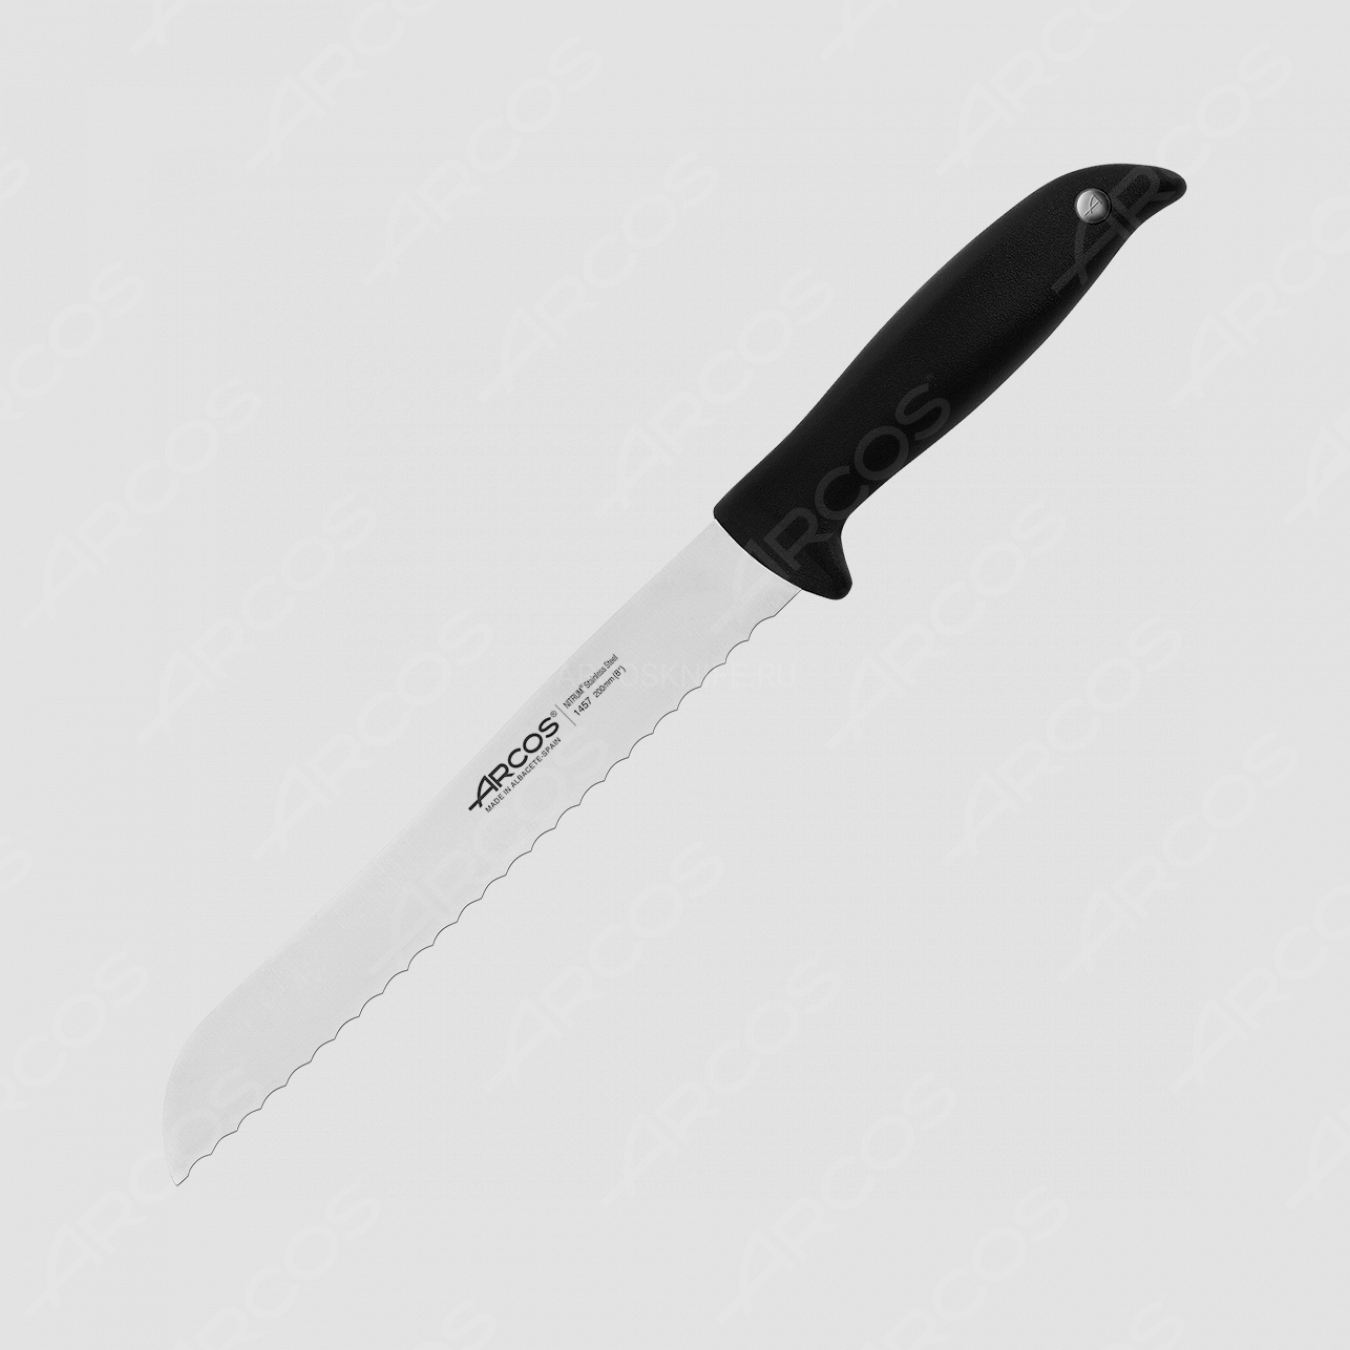 Нож кухонный для хлеба 20 см, серия Menorca, ARCOS, Испания